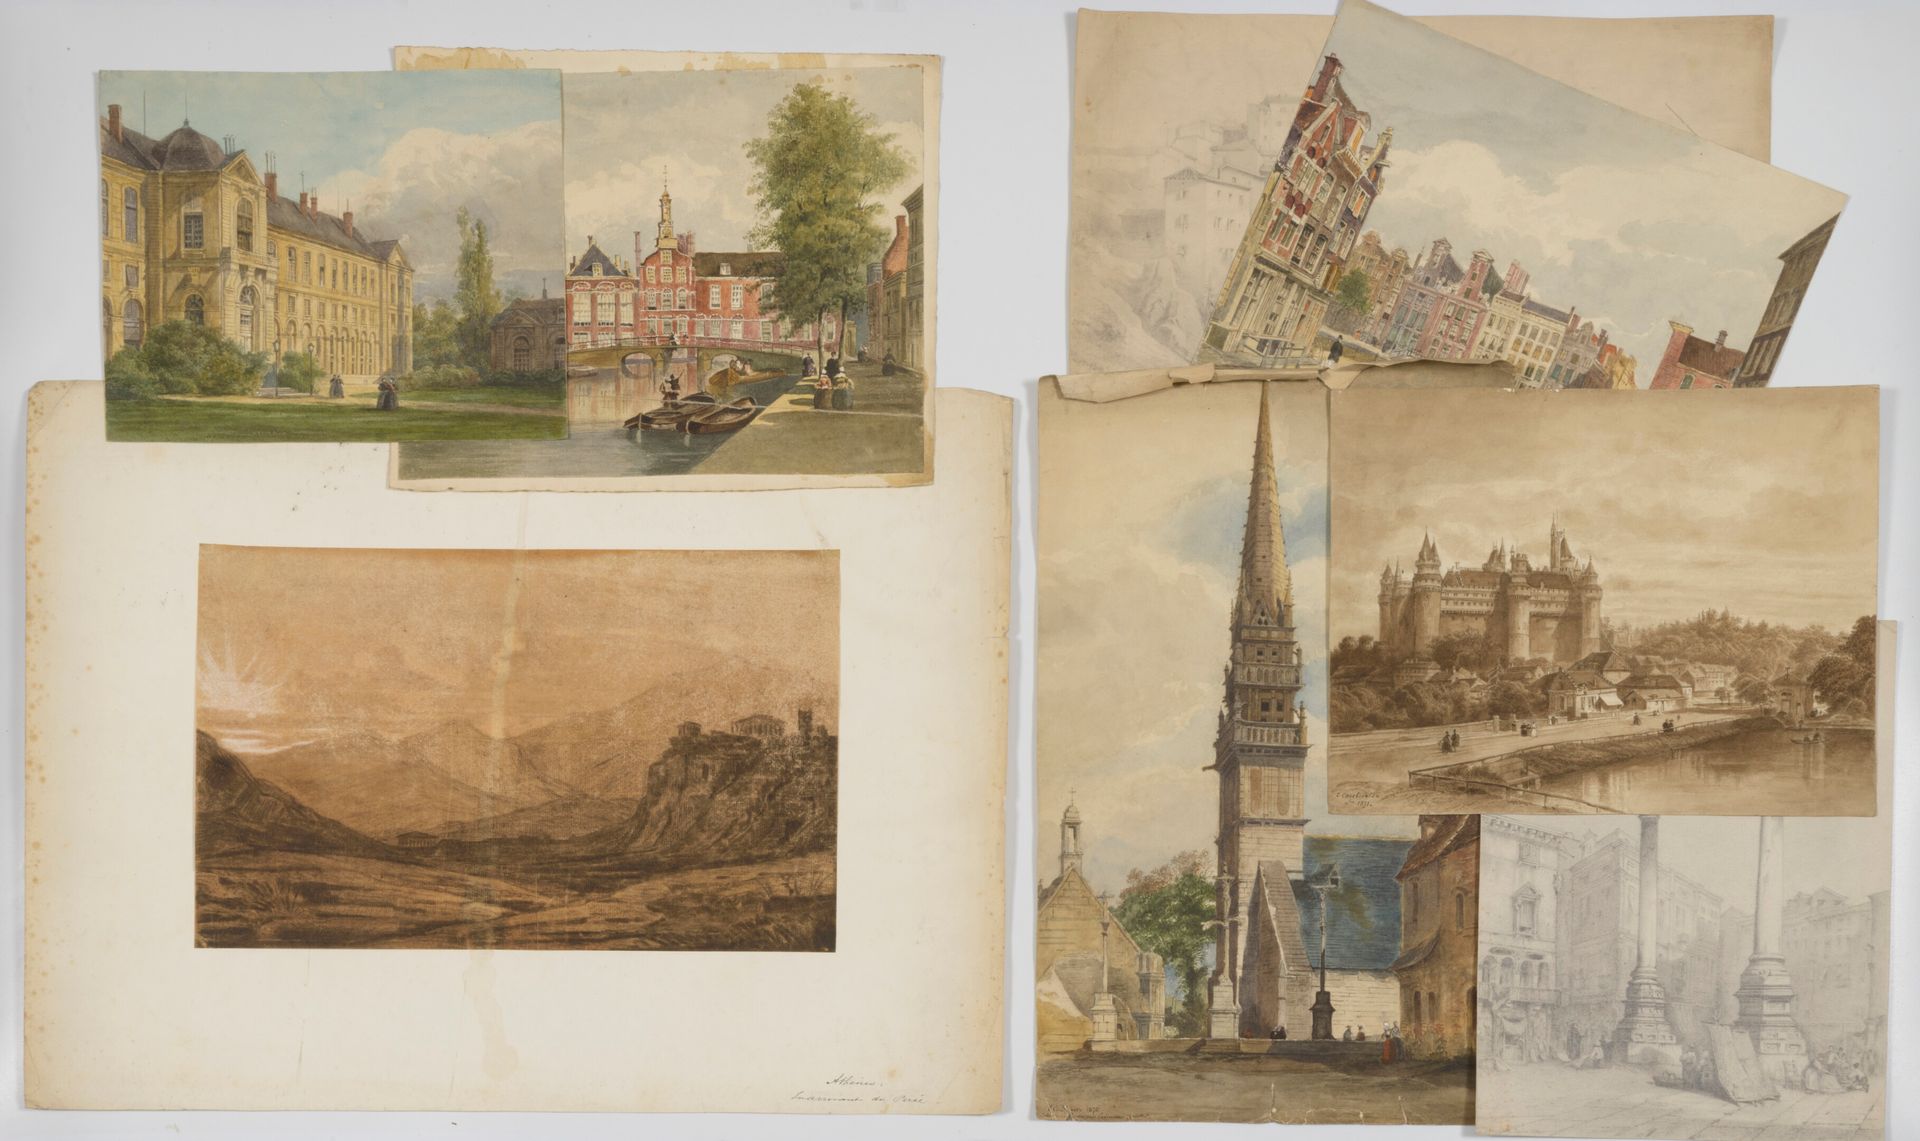 Emile COUTURIER (XIX-XXe siècle) 一共有8幅图画。

- 阿姆斯特丹铸币厂的景色。

水彩画，右下方有签名，位置和日期为1872&hellip;